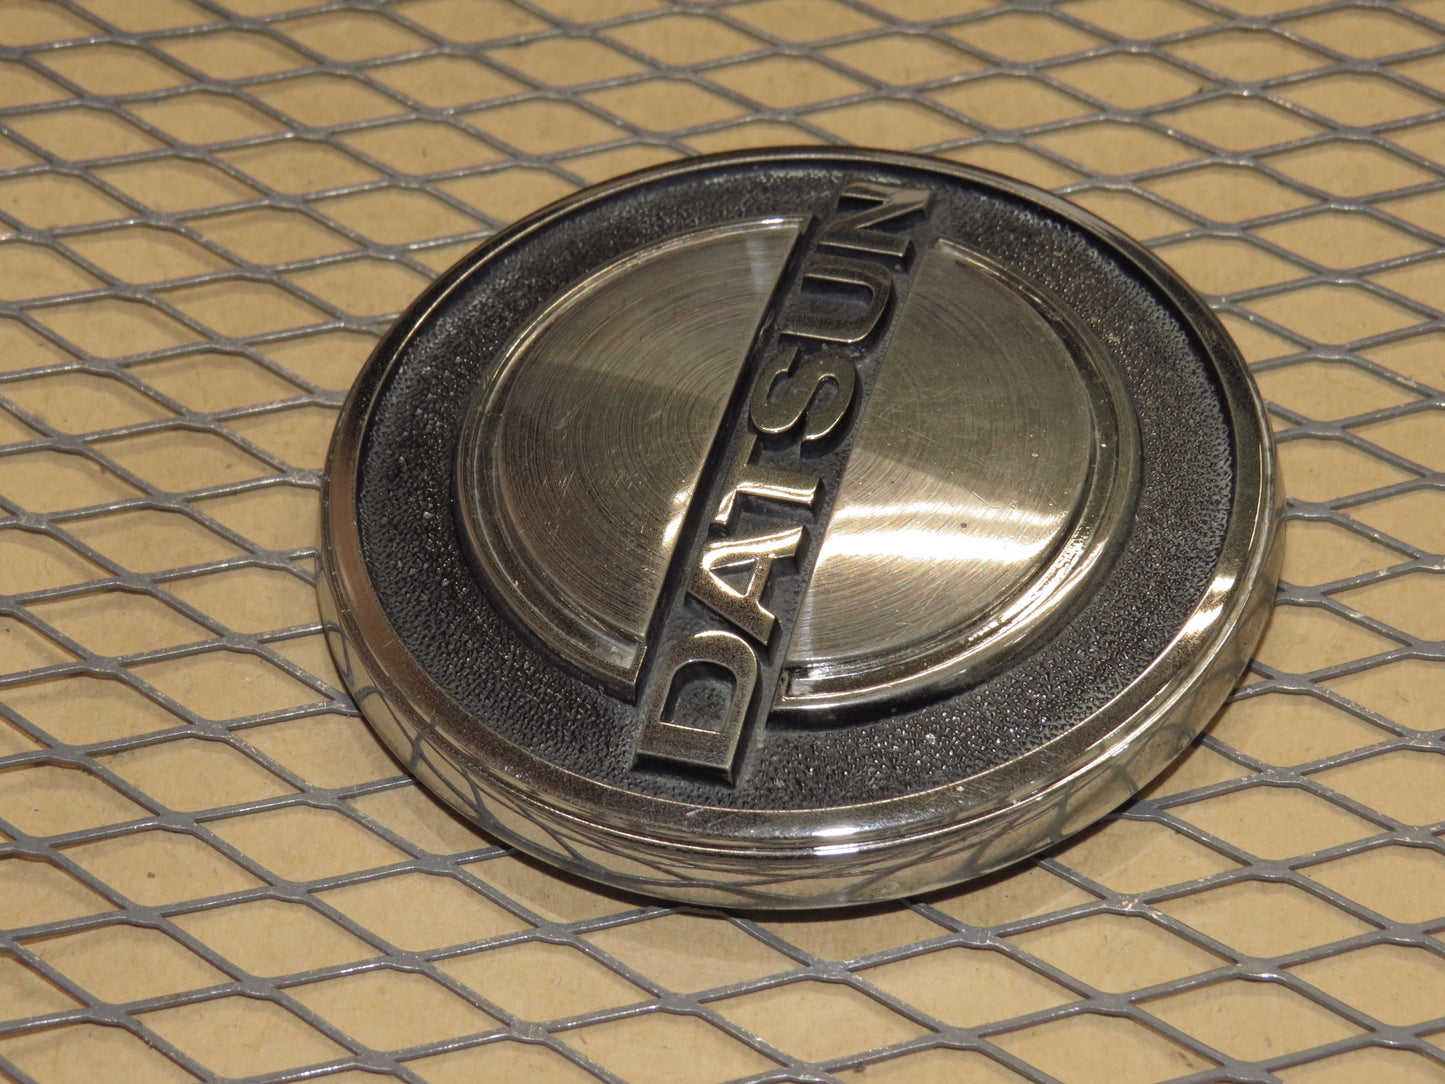 75 76 77 78 Datsun 280z OEM Front Hood Nose Emblem Badge